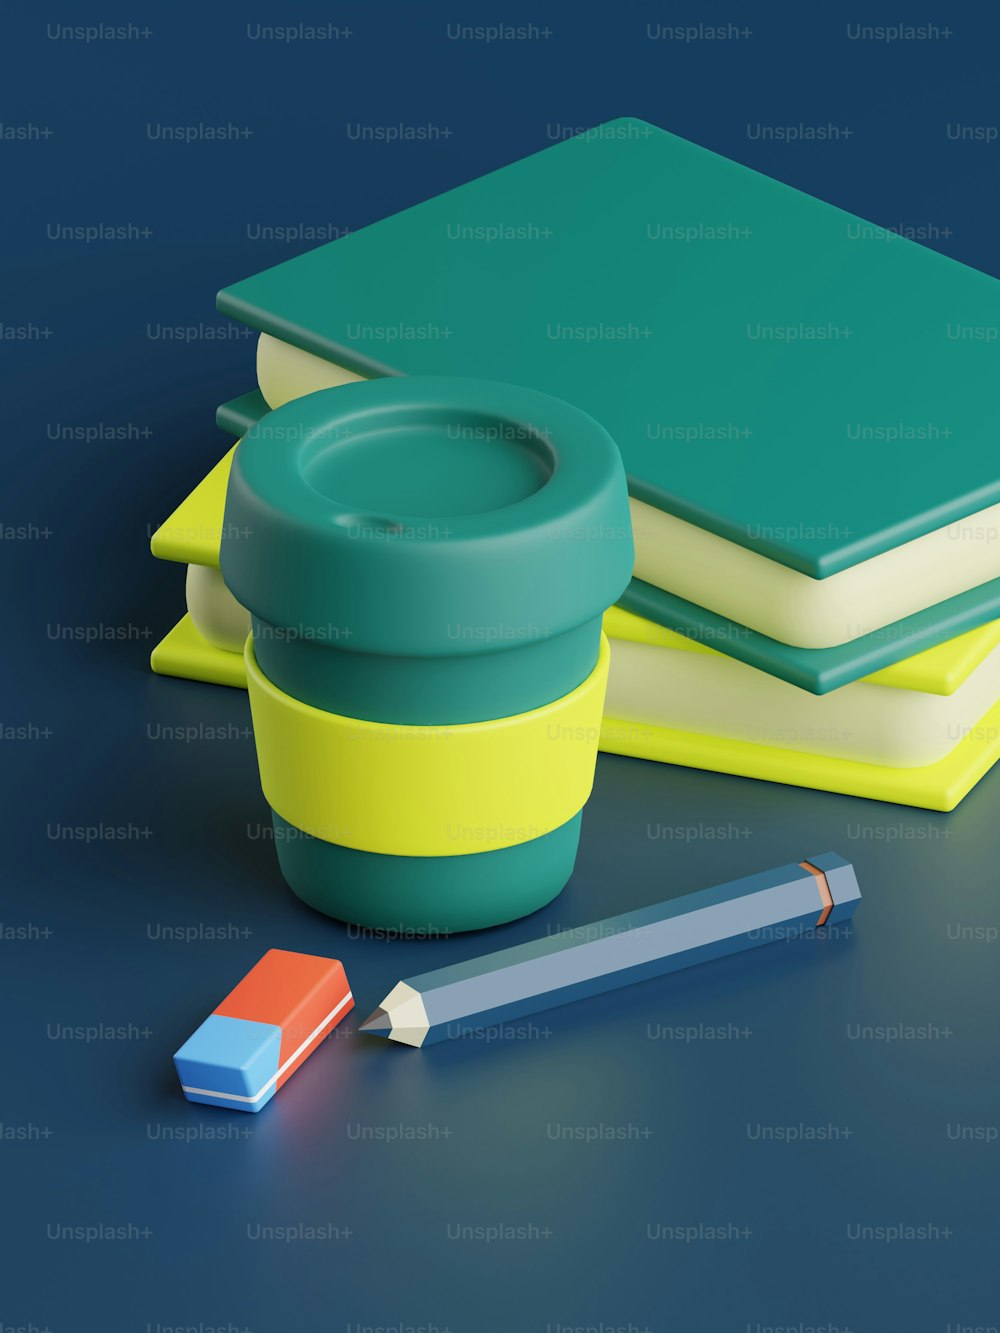 탁자 위의 책 더미, 컵, 연필